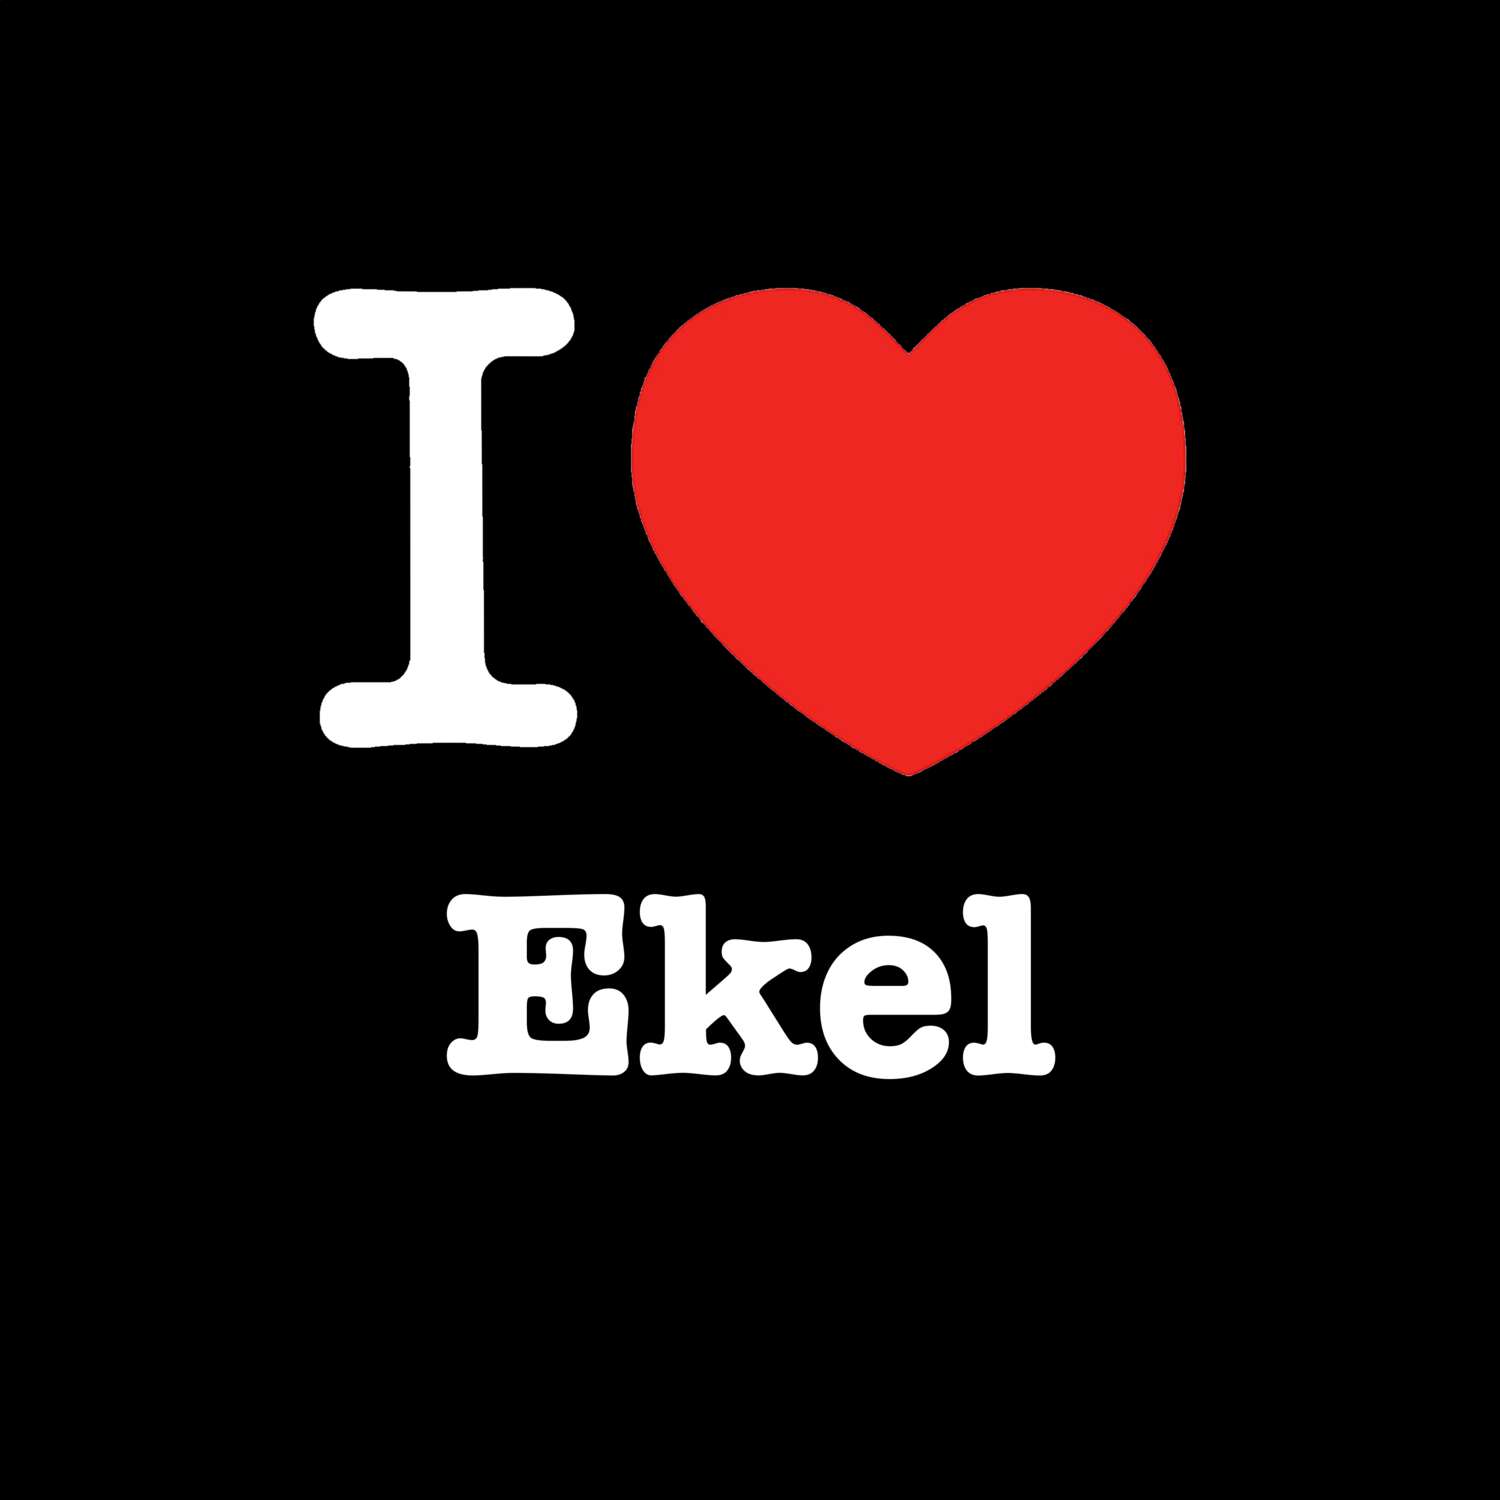 Ekel T-Shirt »I love«